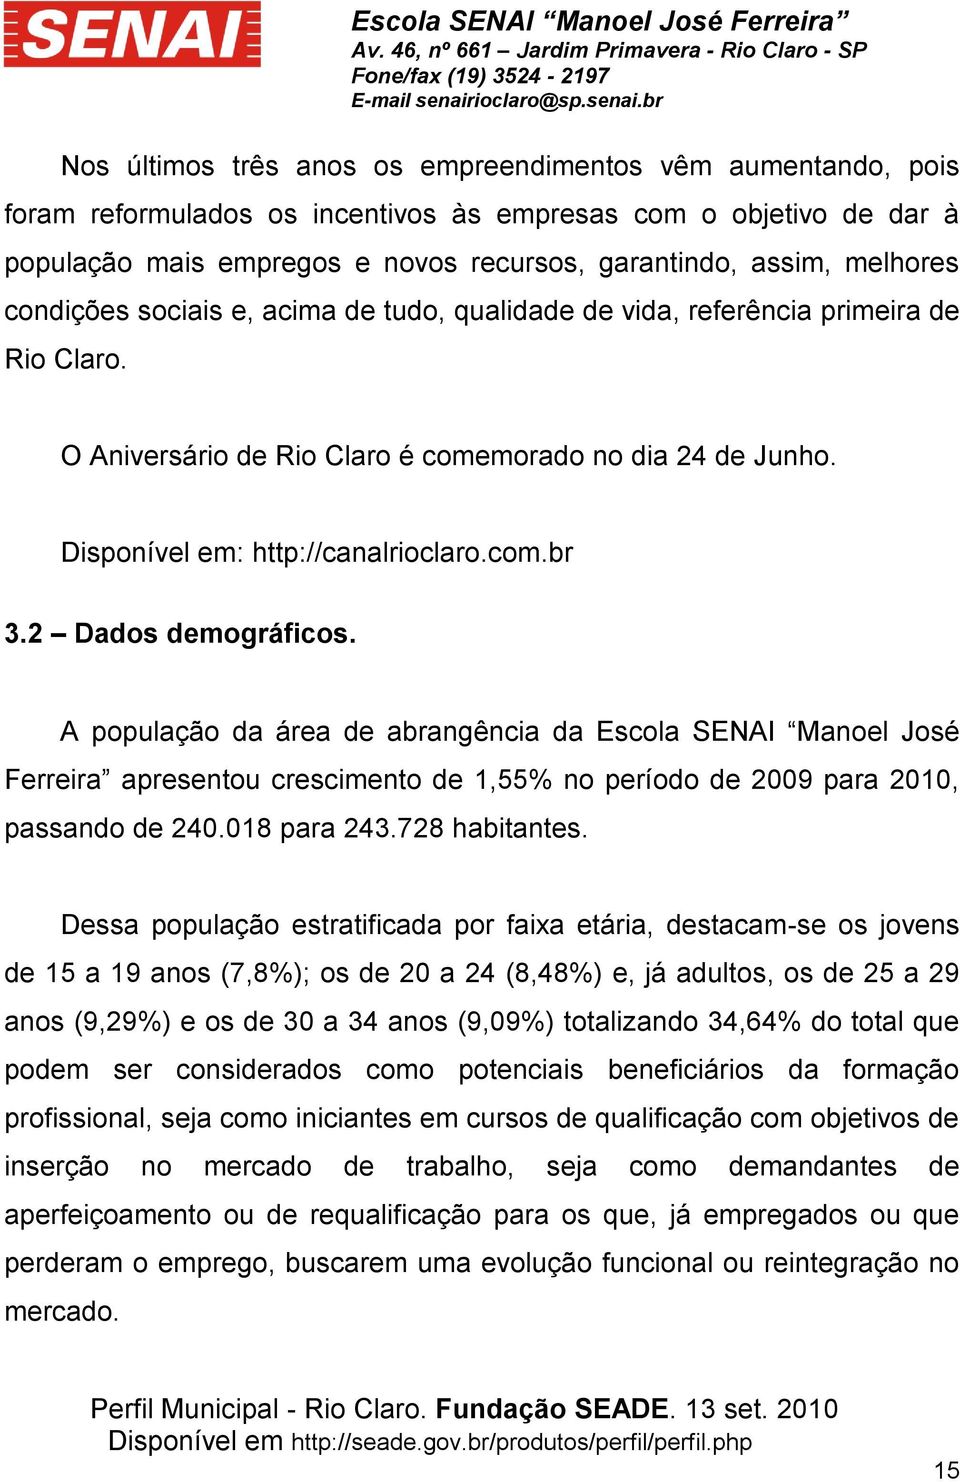 2 Dados demográficos. A população da área de abrangência da Escola SENAI Manoel José Ferreira apresentou crescimento de 1,55% no período de 2009 para 2010, passando de 240.018 para 243.728 habitantes.